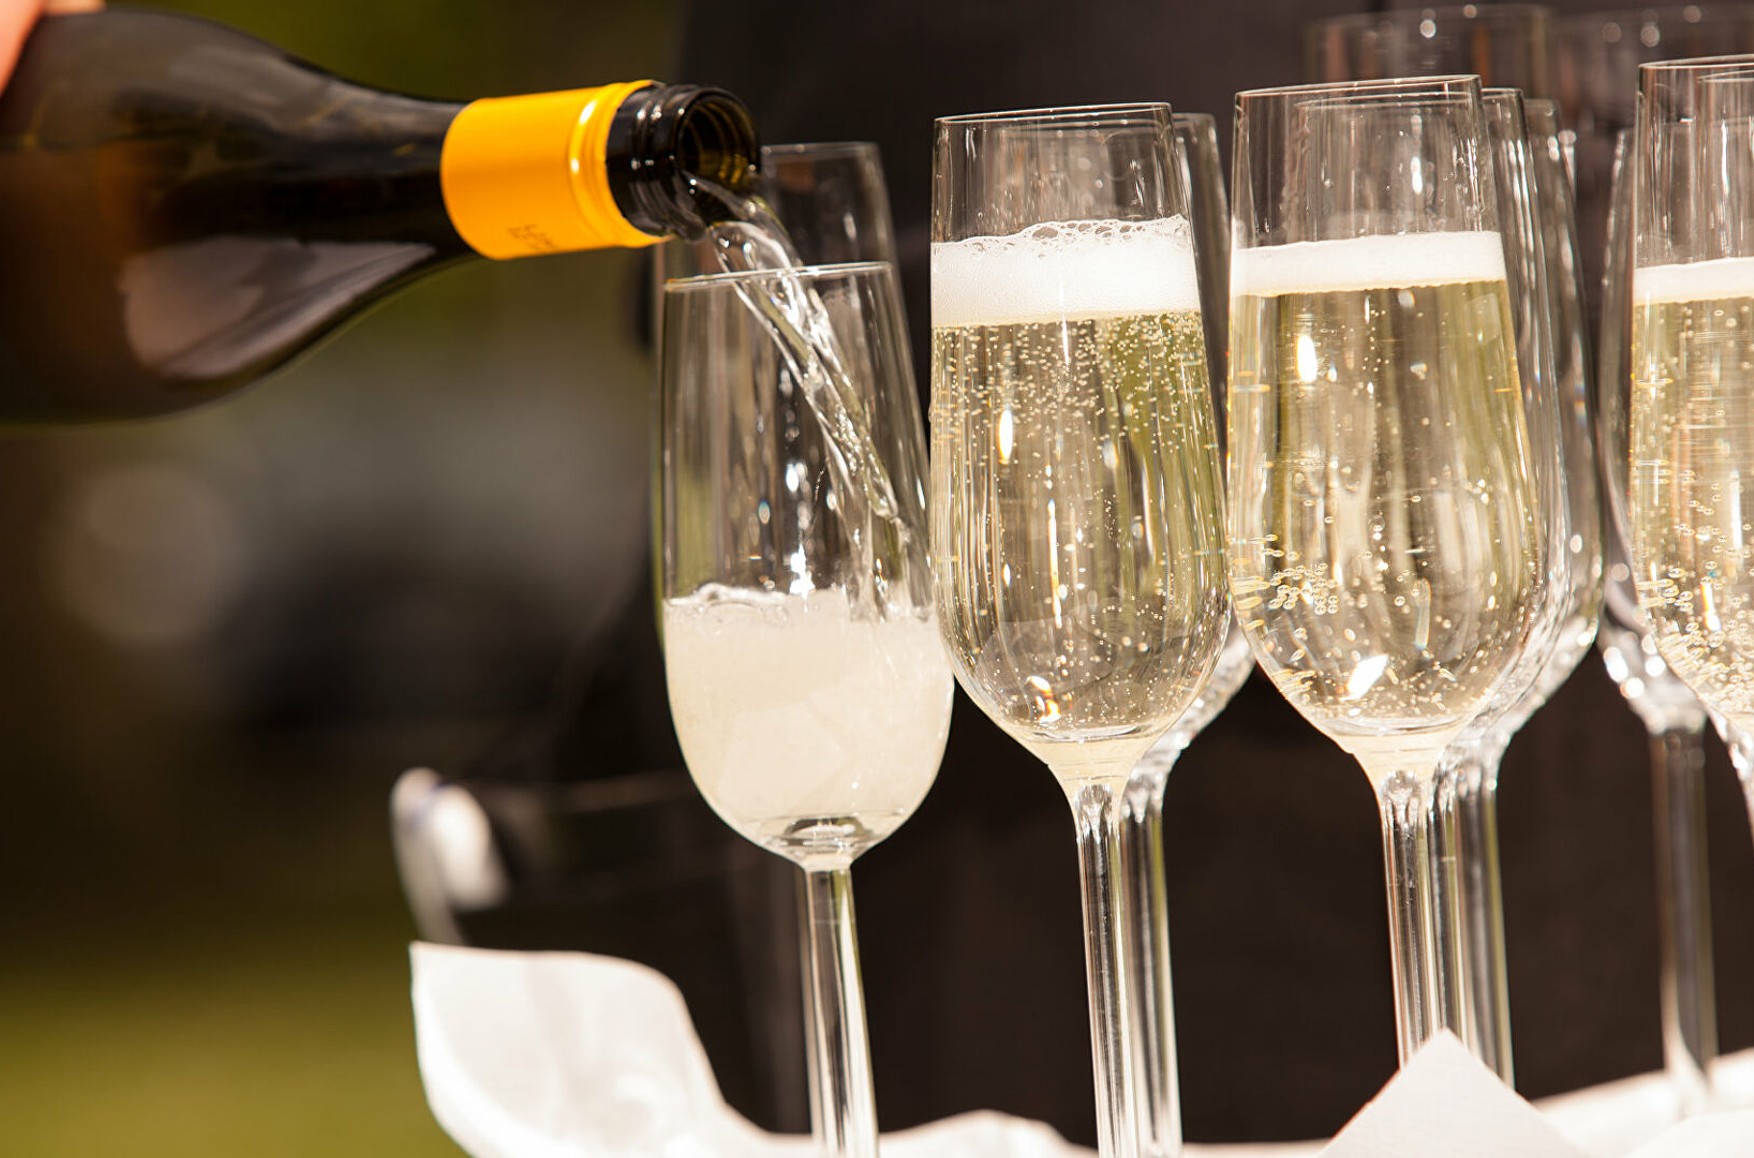 Міжпрофесійну комітет вин Шампані скасував заборону на експорт французького шампанського в Росію